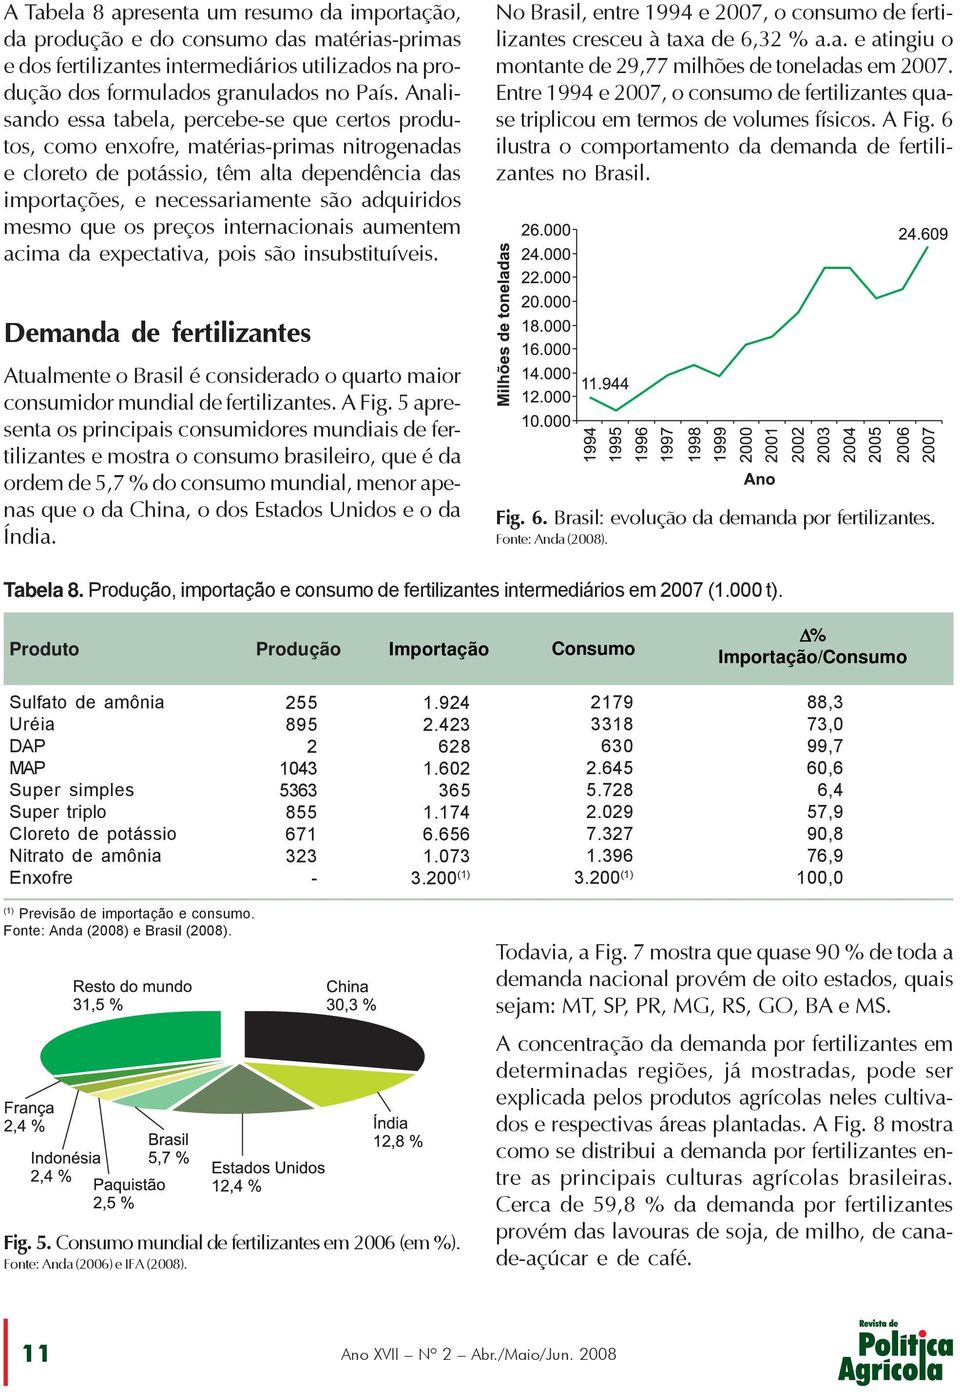 que os preços internacionais aumentem acima da expectativa, pois são insubstituíveis. No Brasil, entre 1994 e 2007, o consumo de fertilizantes cresceu à taxa de 6,32 % a.a. e atingiu o montante de 29,77 milhões de toneladas em 2007.